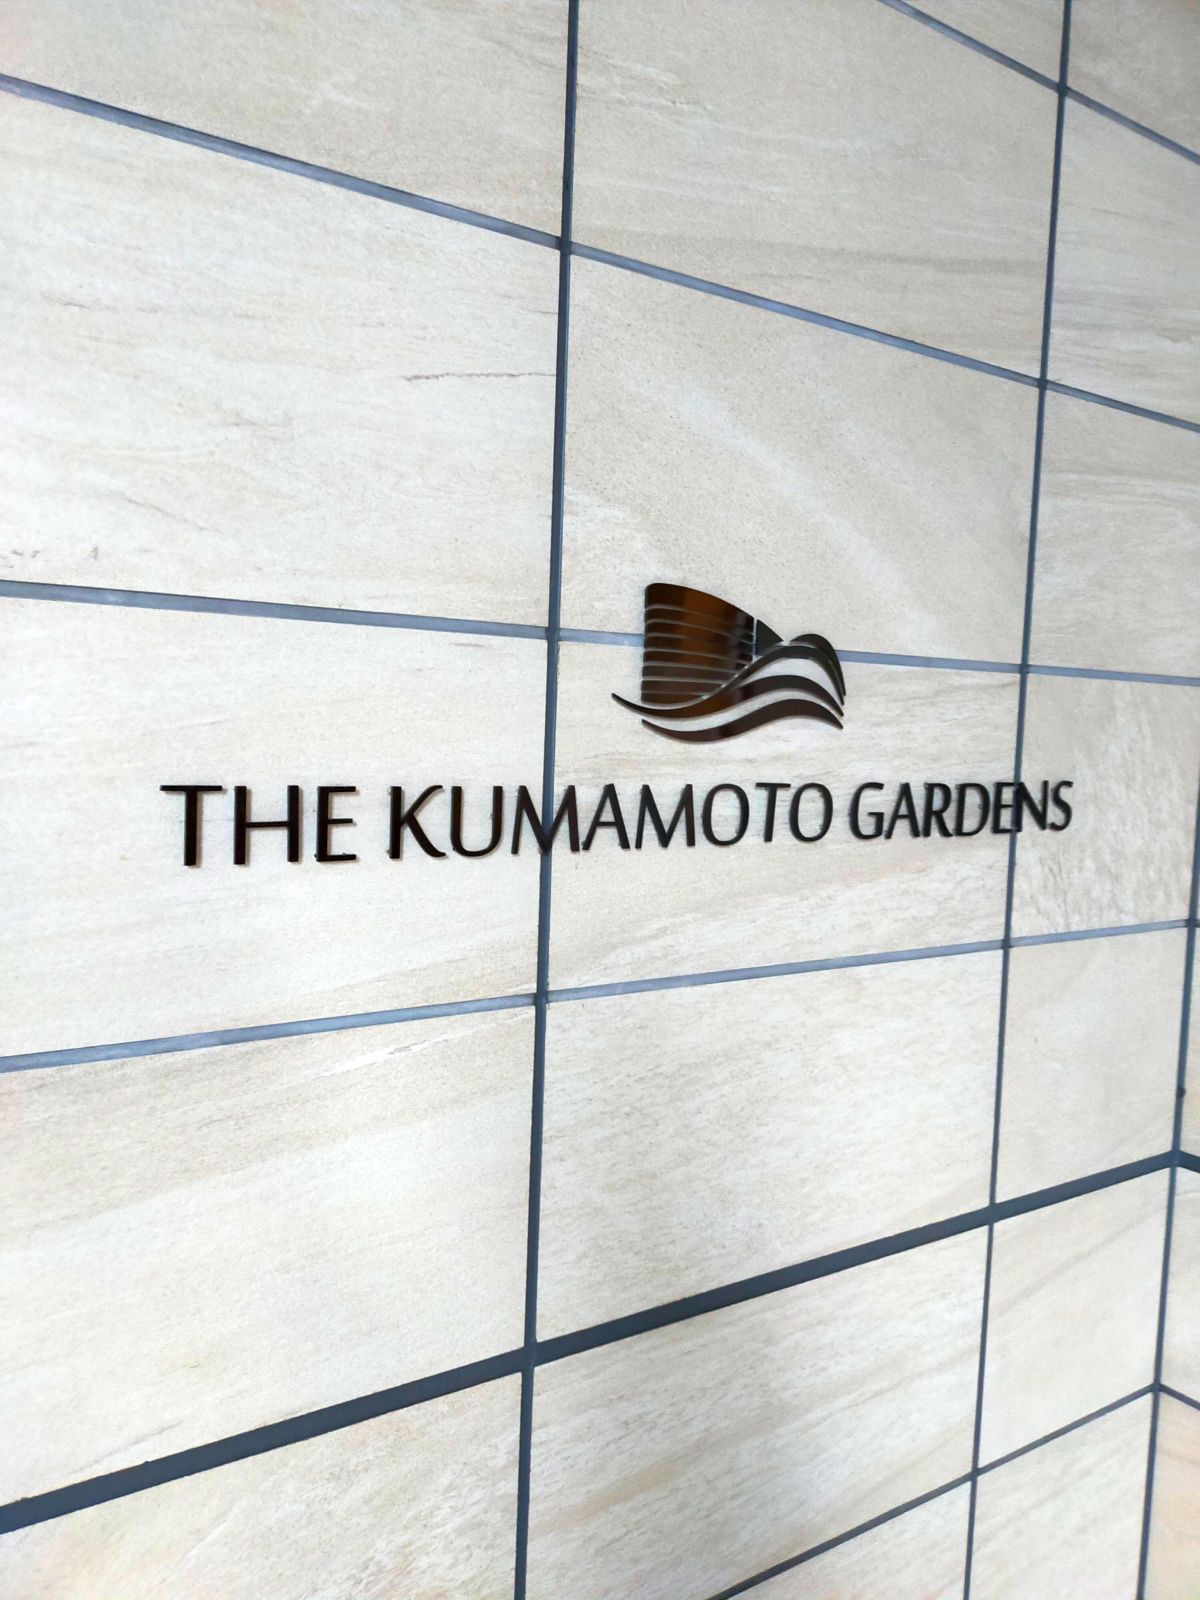 THE KUMAMOTO GARDENS